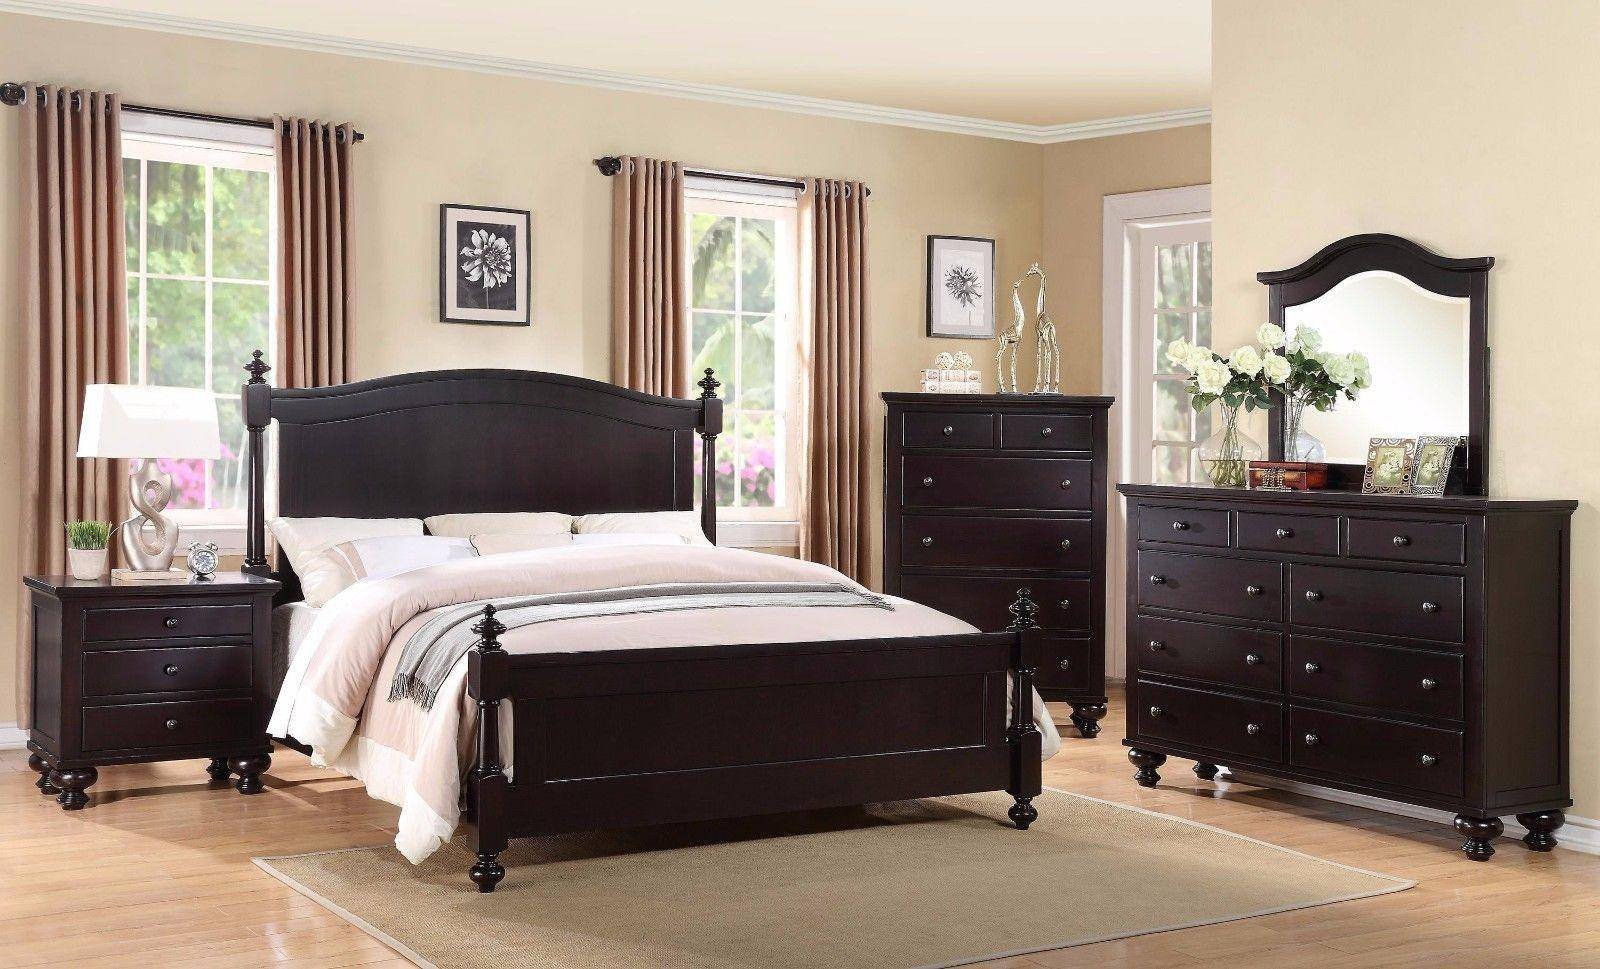 Black King Bedroom Set Beautiful Crown Mark B1350 sommer Traditional Black Espresso King Size Bedroom Set 3 Pcs